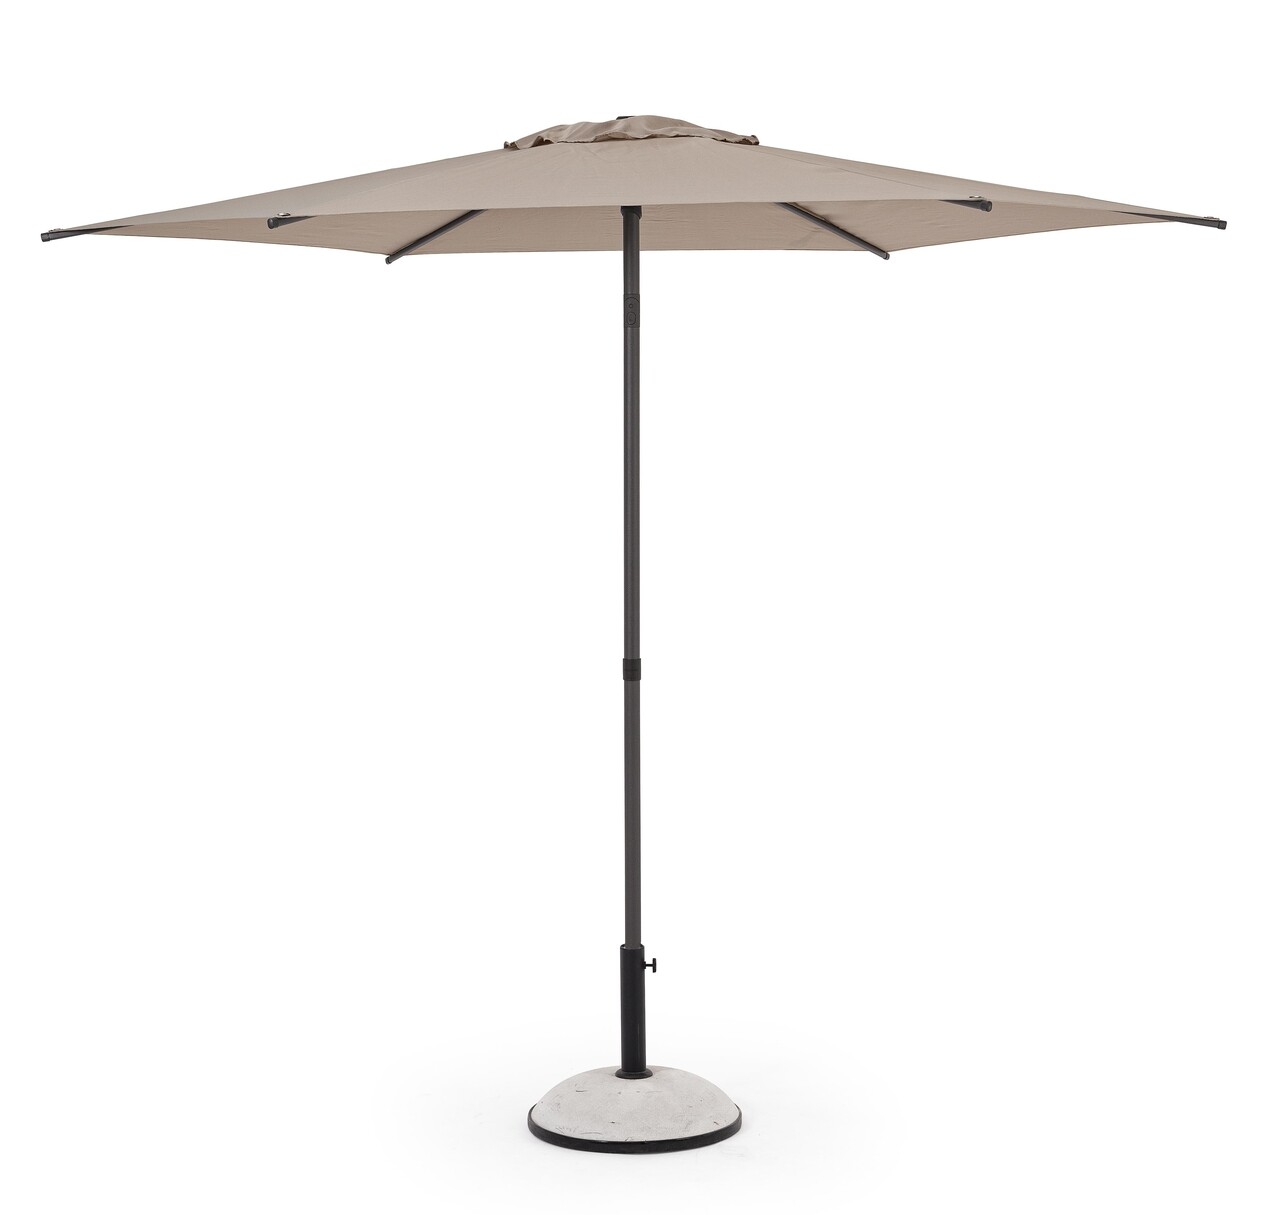 Samba Kerti/terasz napernyő, Bizzotto, Ø 270 cm, oszlop Ø 38 mm, acél/poliészter, szürke